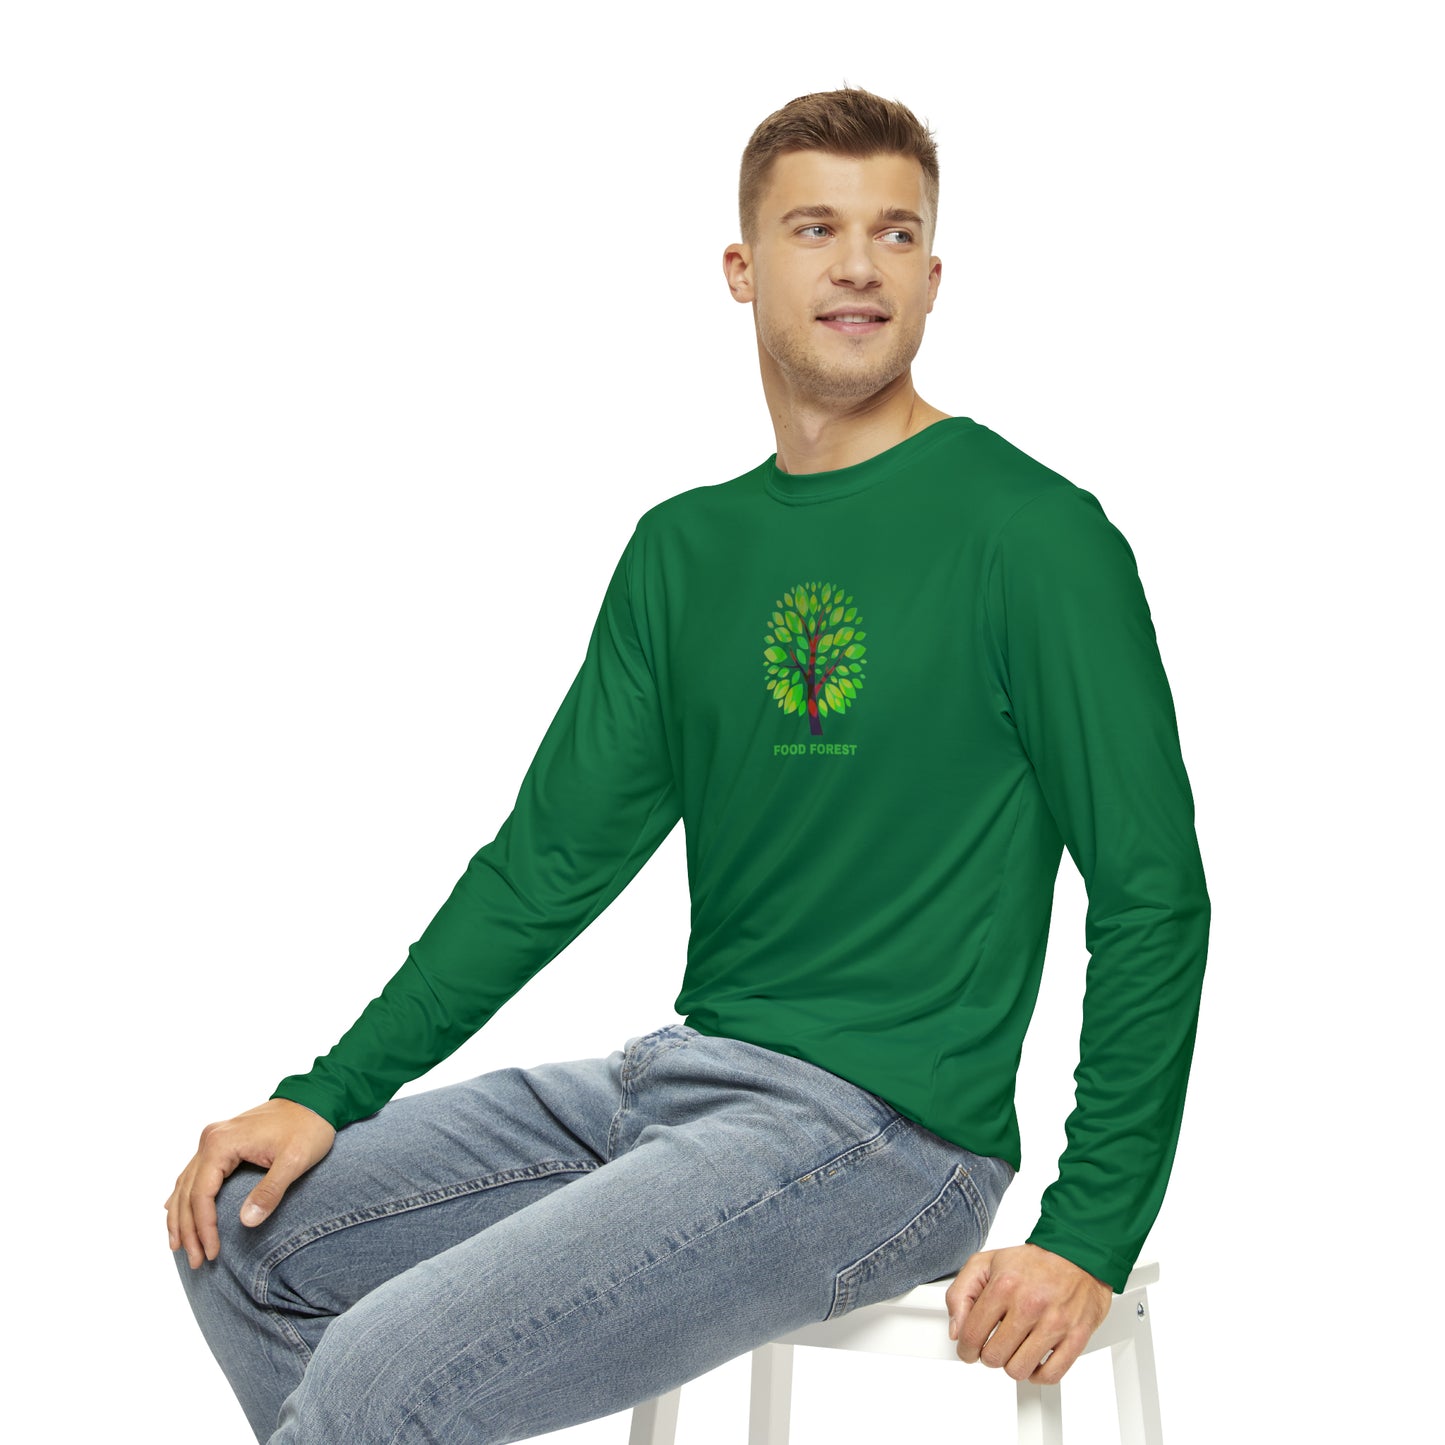 FOOD FOREST Men's Long Sleeve Shirt, Green